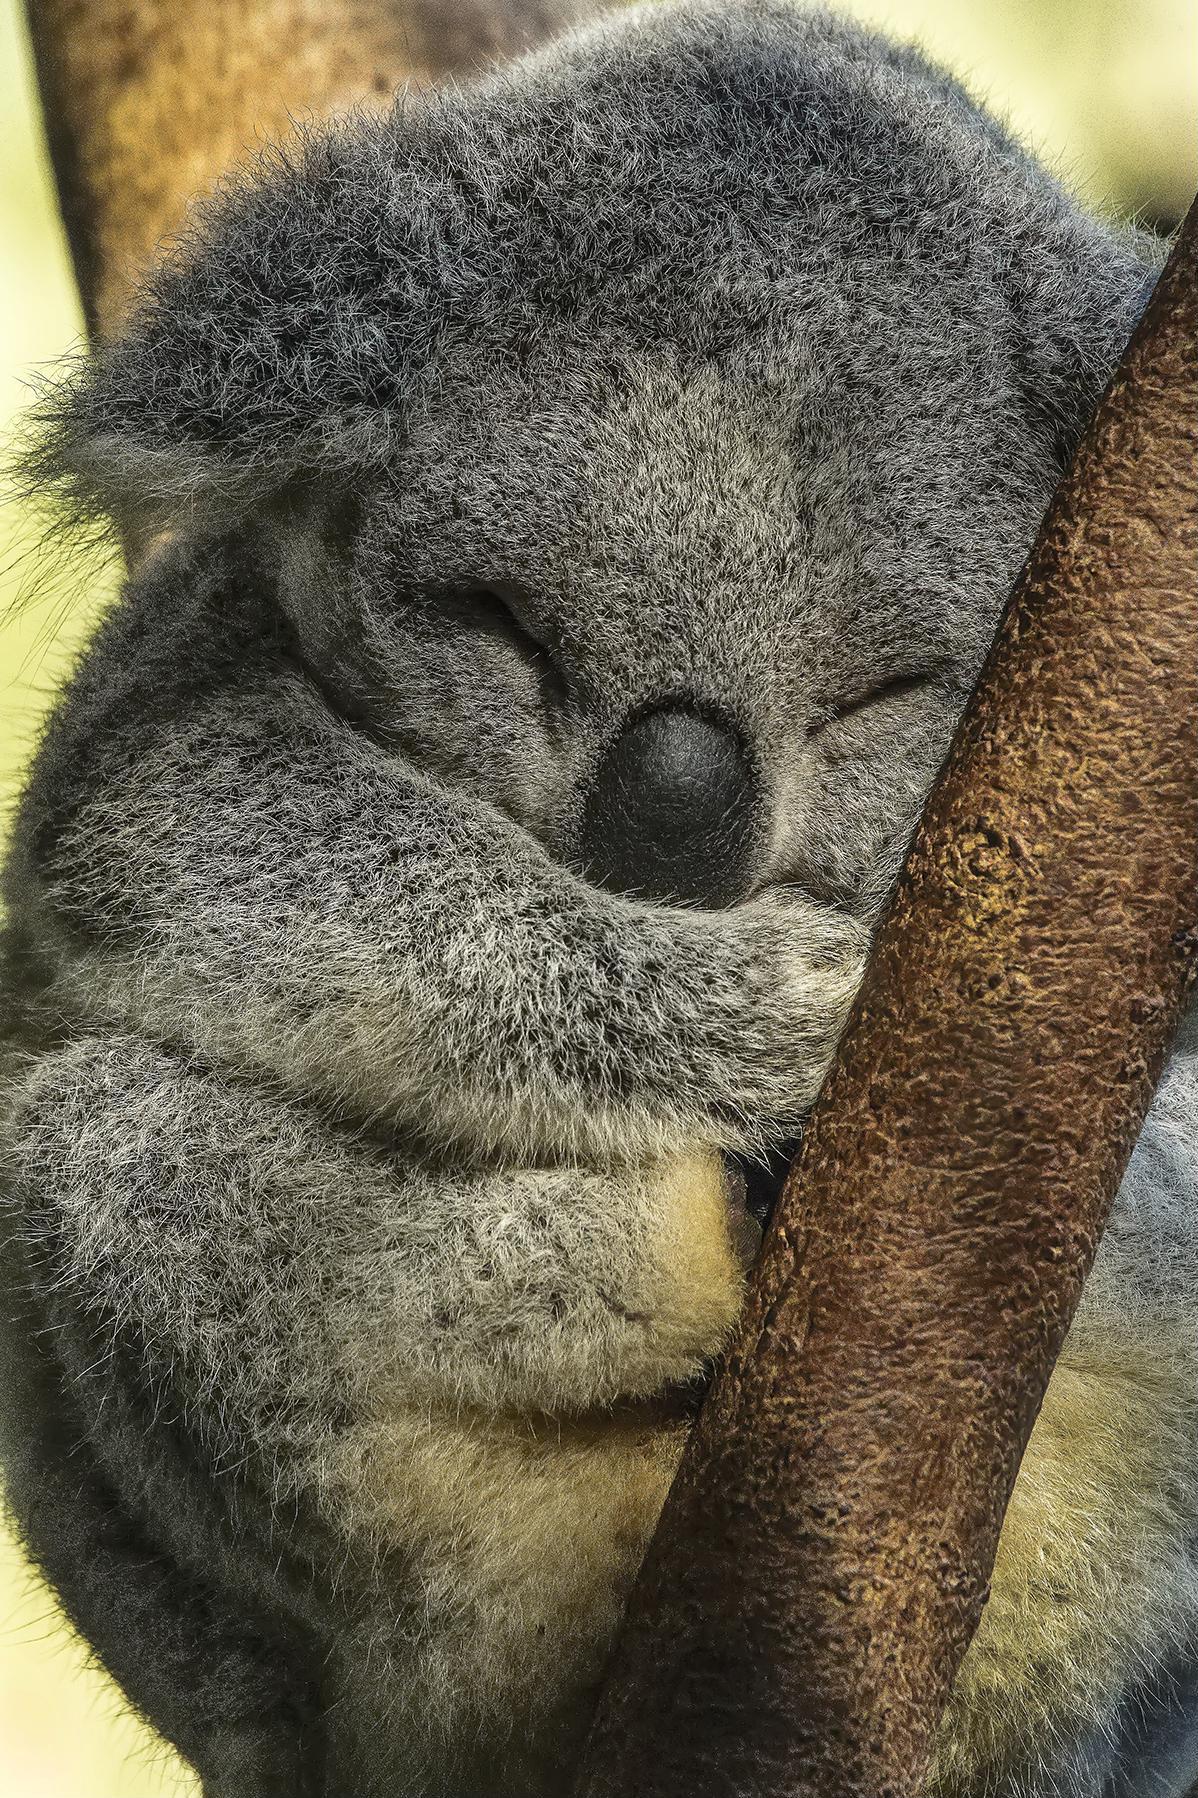 File:Australia Zoo baby Koala asleep-1 (18173740872).jpg - Wikimedia Commons